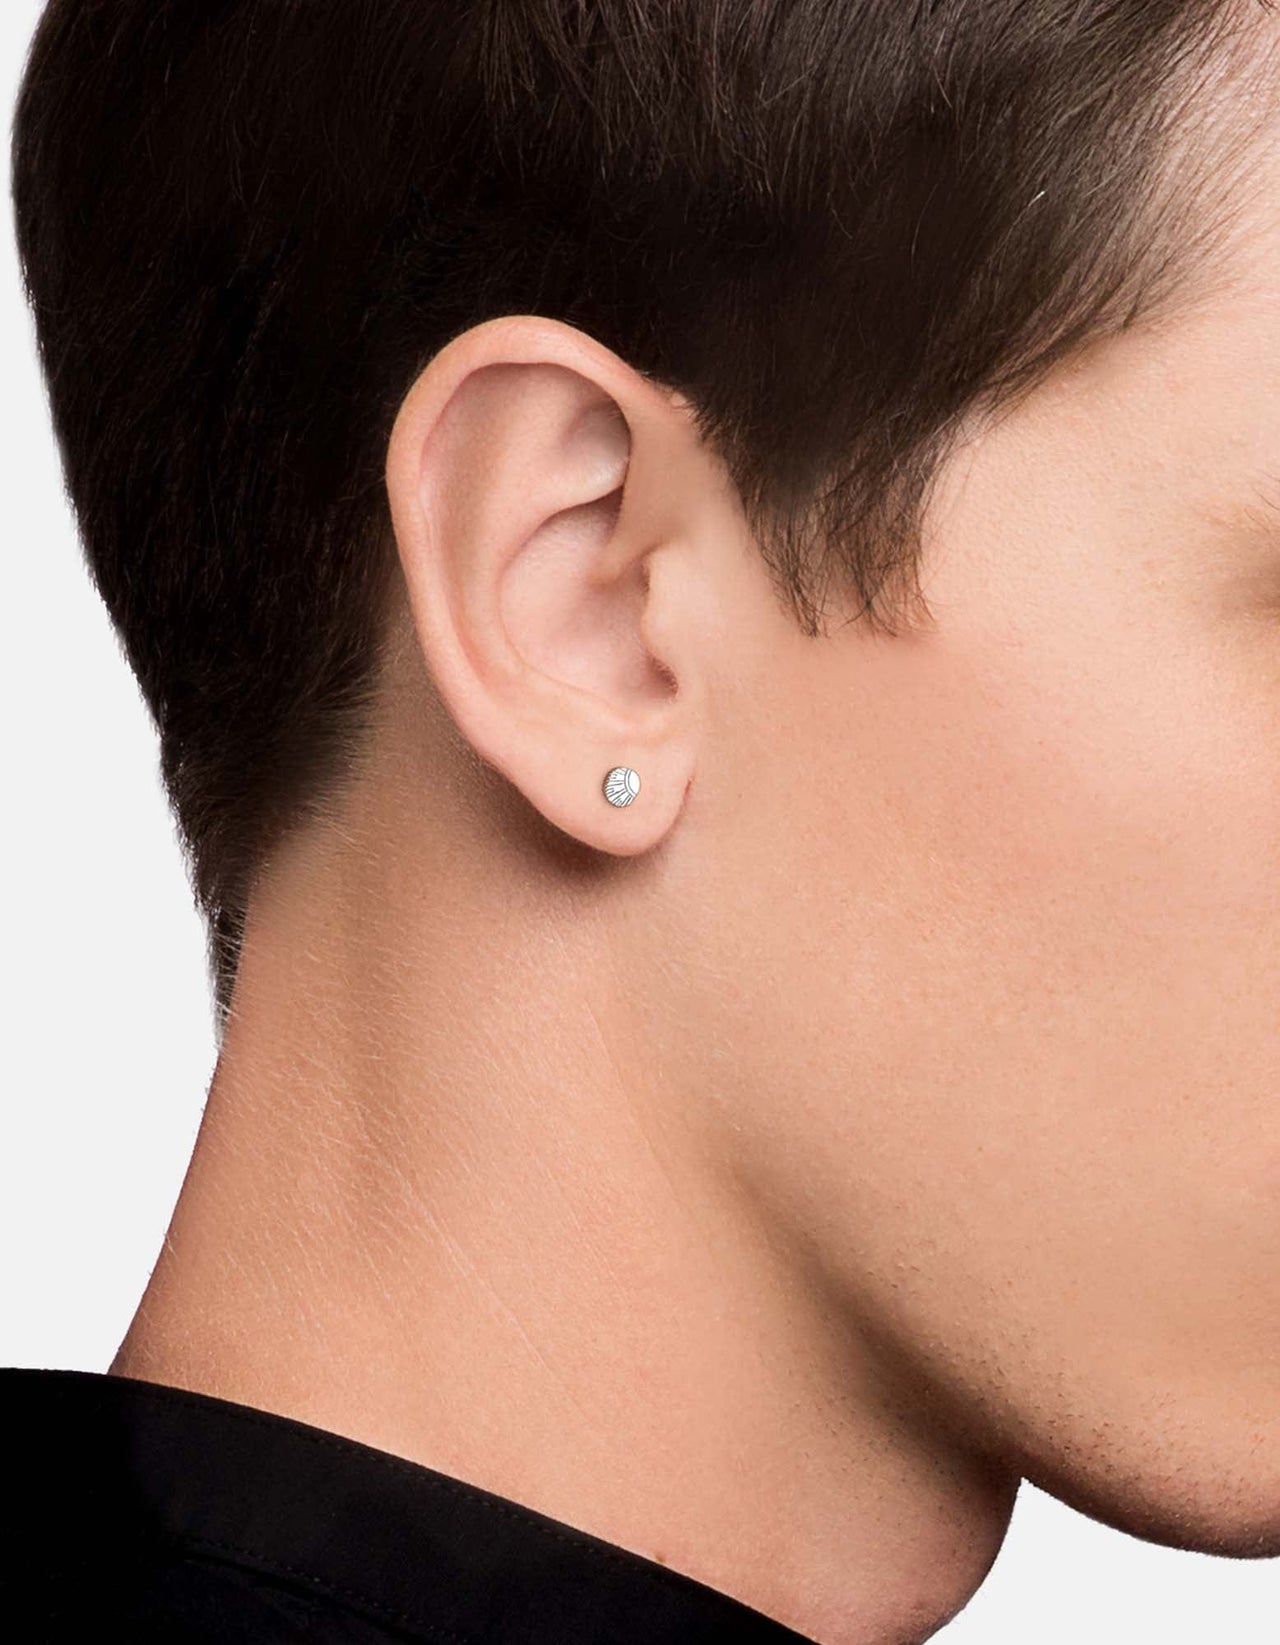 Meridian Stud Earrings, Sterling Silver | Men's Earrings | Miansai